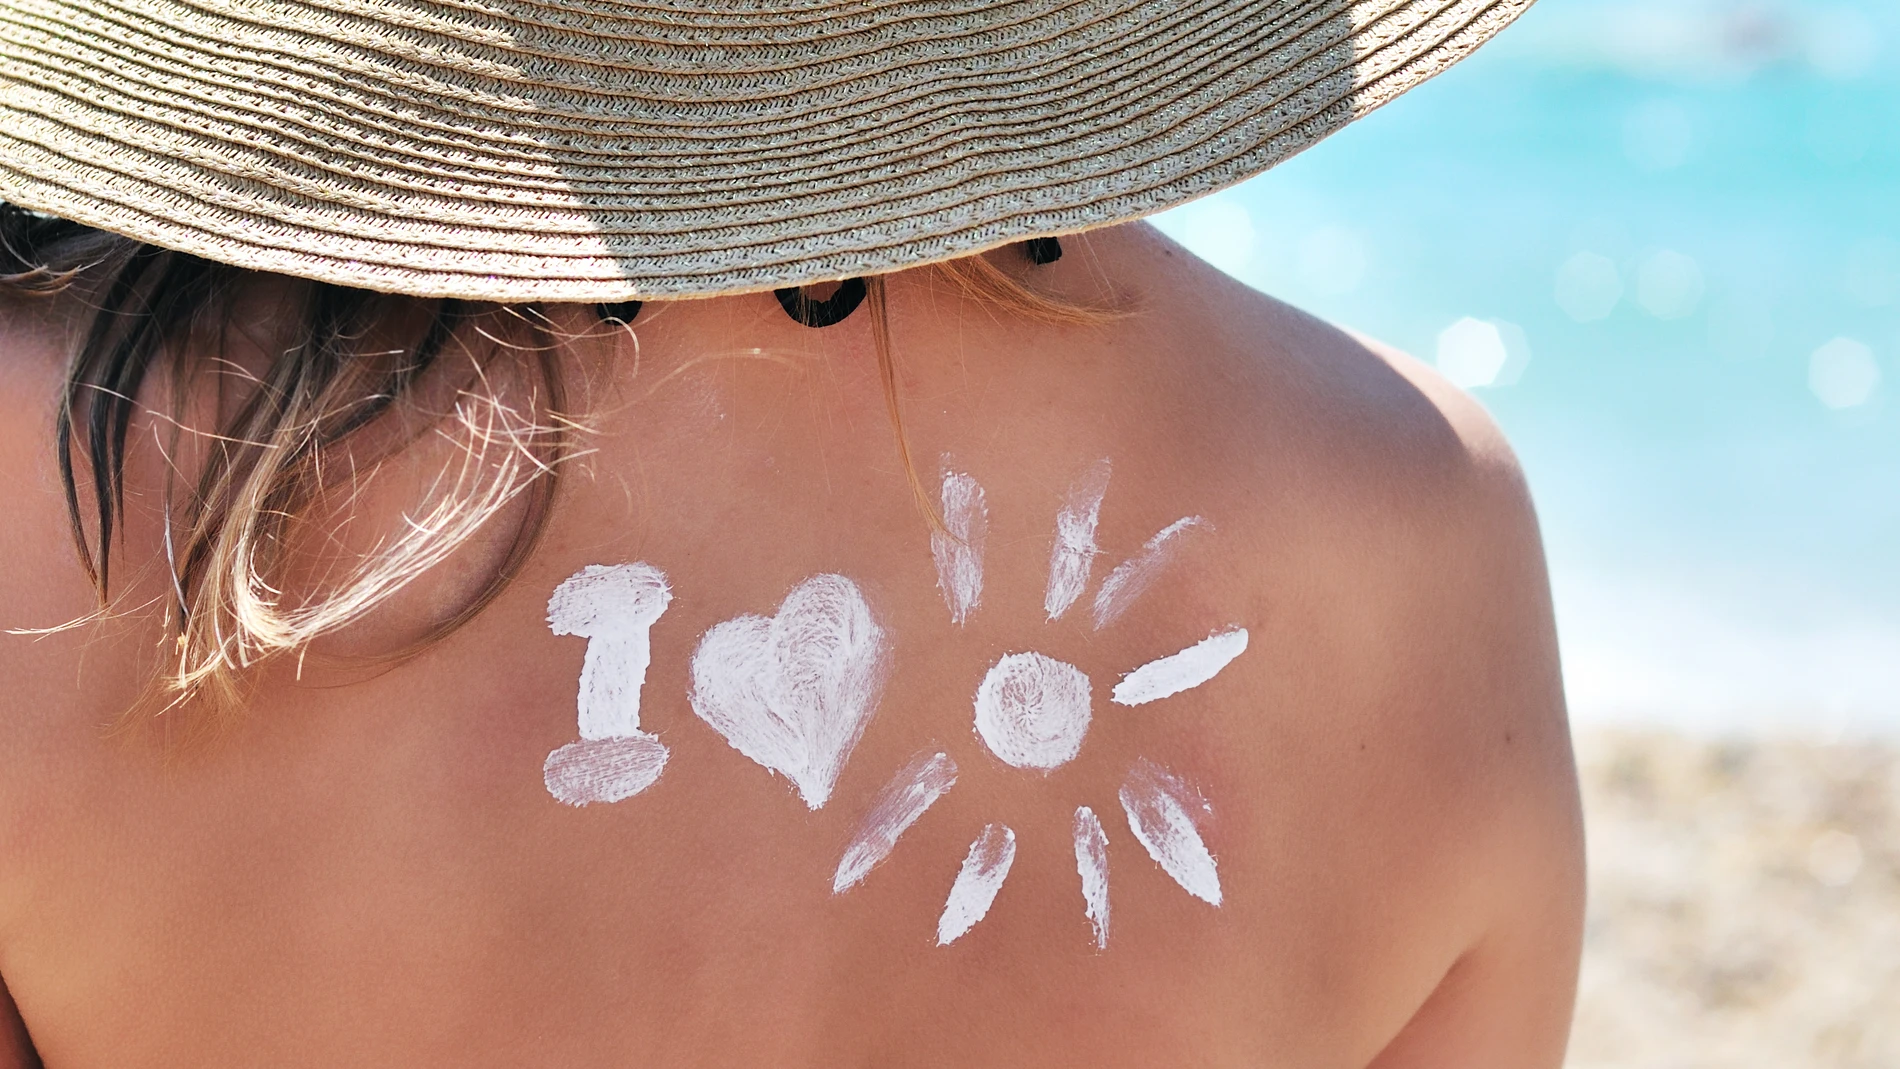 Quemaduras o cáncer de piel son efectos nocivos de la radiación solar